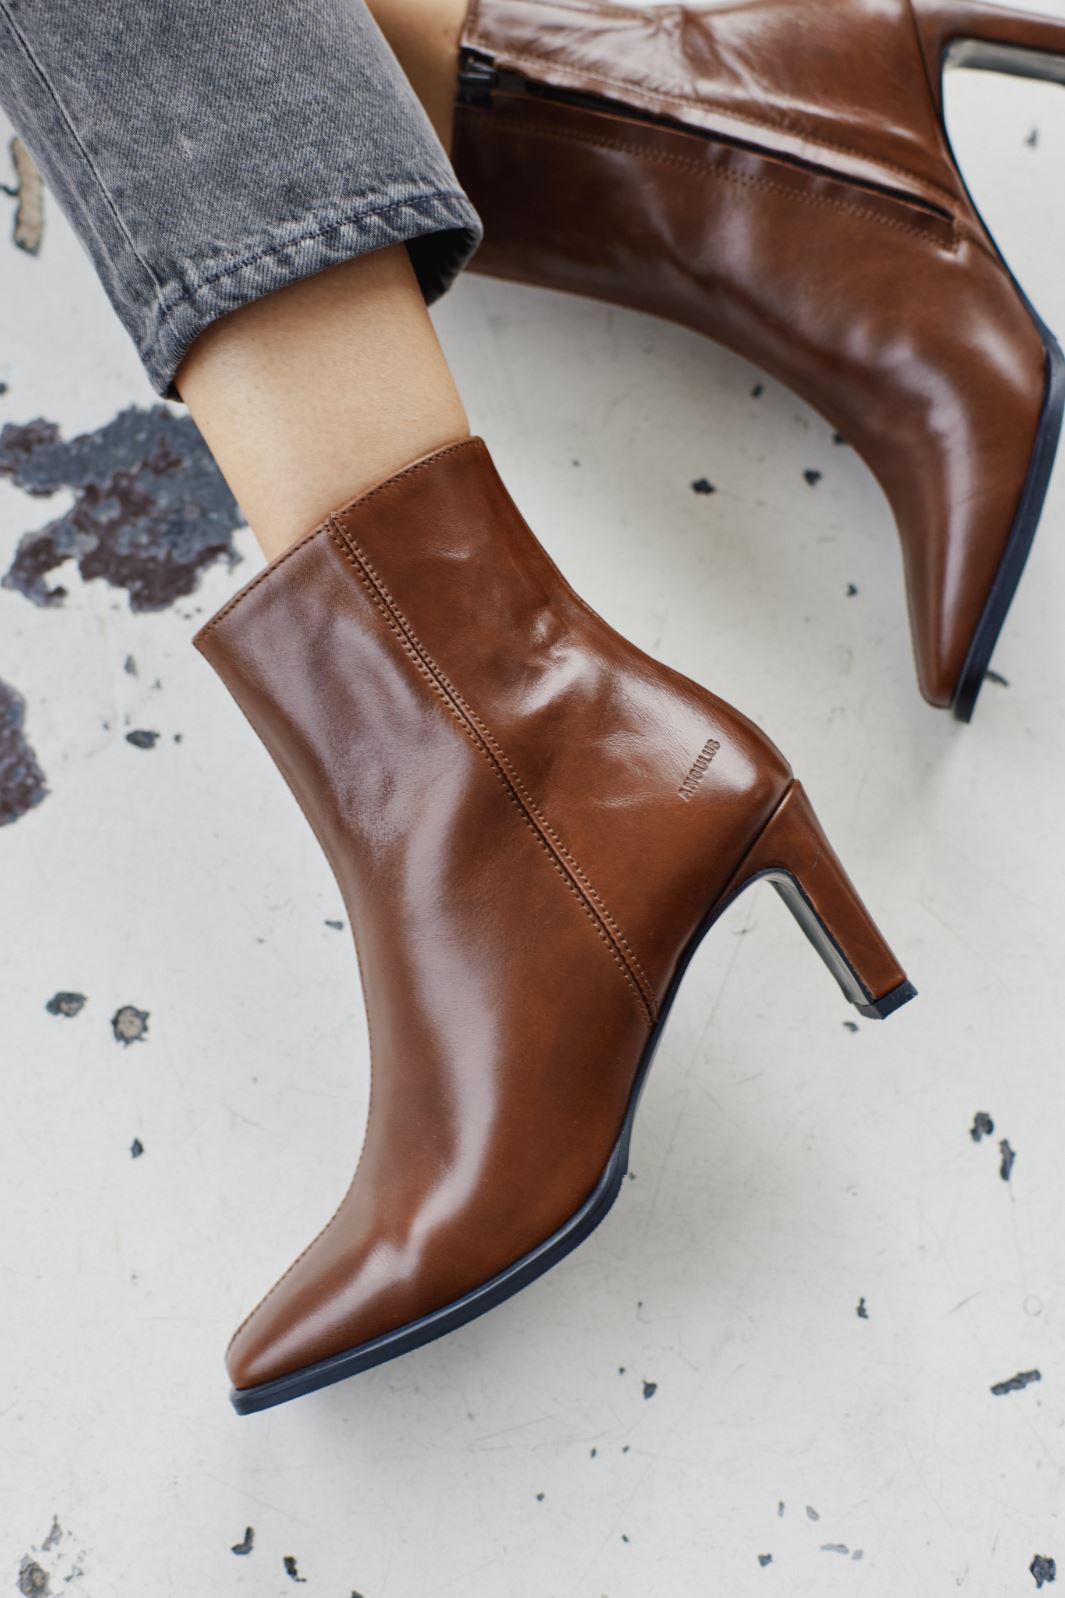 Angulus - Block heel boot with zipper - 1837/002 Brown/Dark Brown Støvletter 